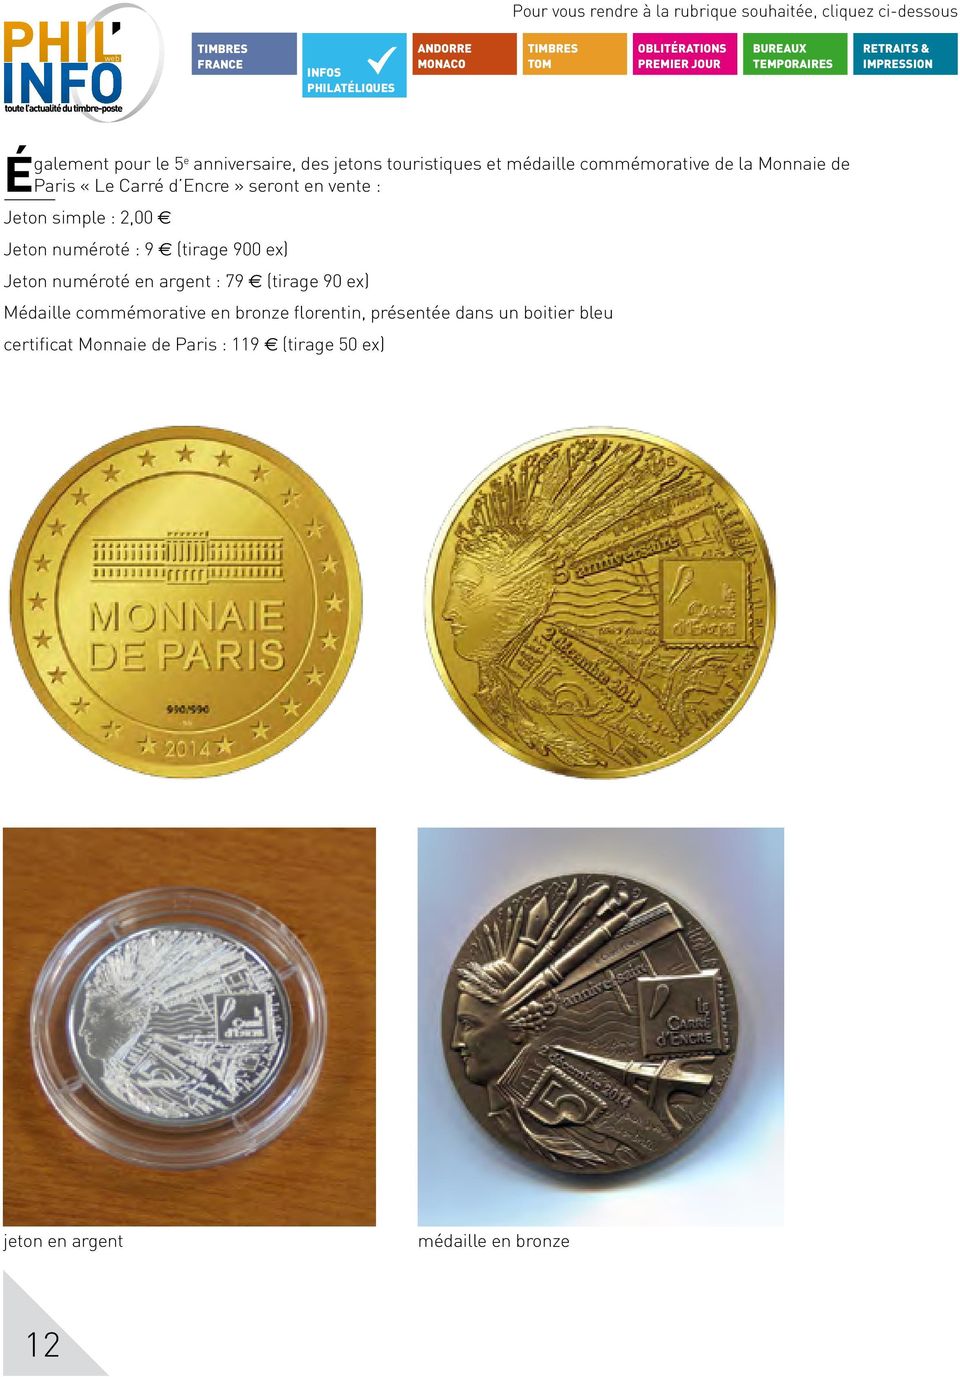 Jeton numéroté en argent : 79 (tirage 90 ex) Médaille commémorative en bronze florentin, présentée